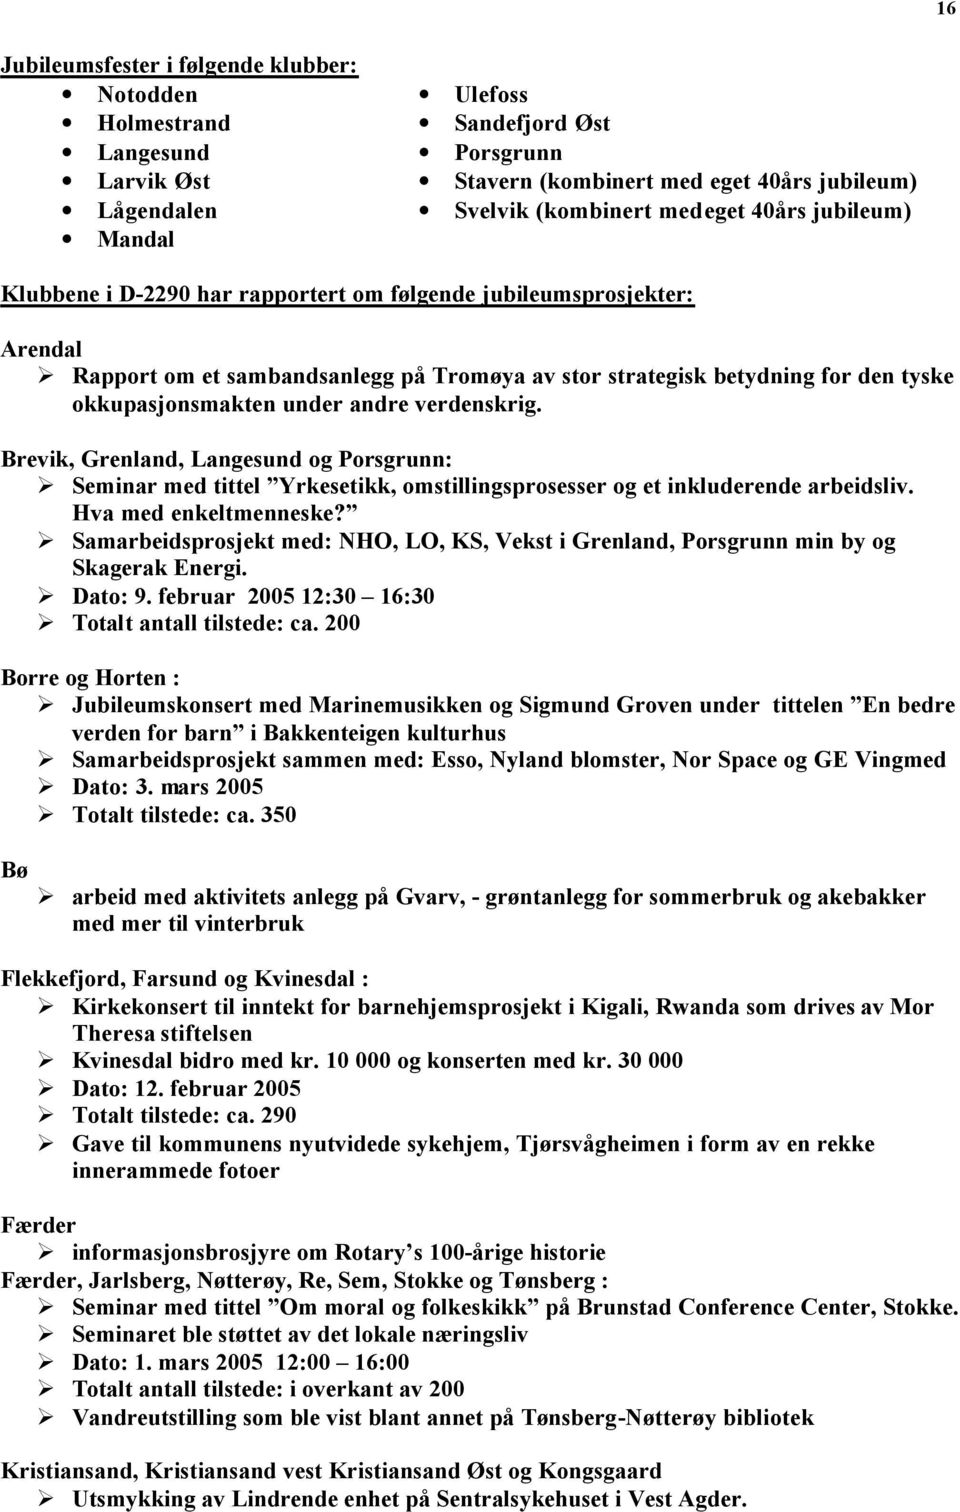 under andre verdenskrig. Brevik, Grenland, Langesund og Porsgrunn: Seminar med tittel Yrkesetikk, omstillingsprosesser og et inkluderende arbeidsliv. Hva med enkeltmenneske?